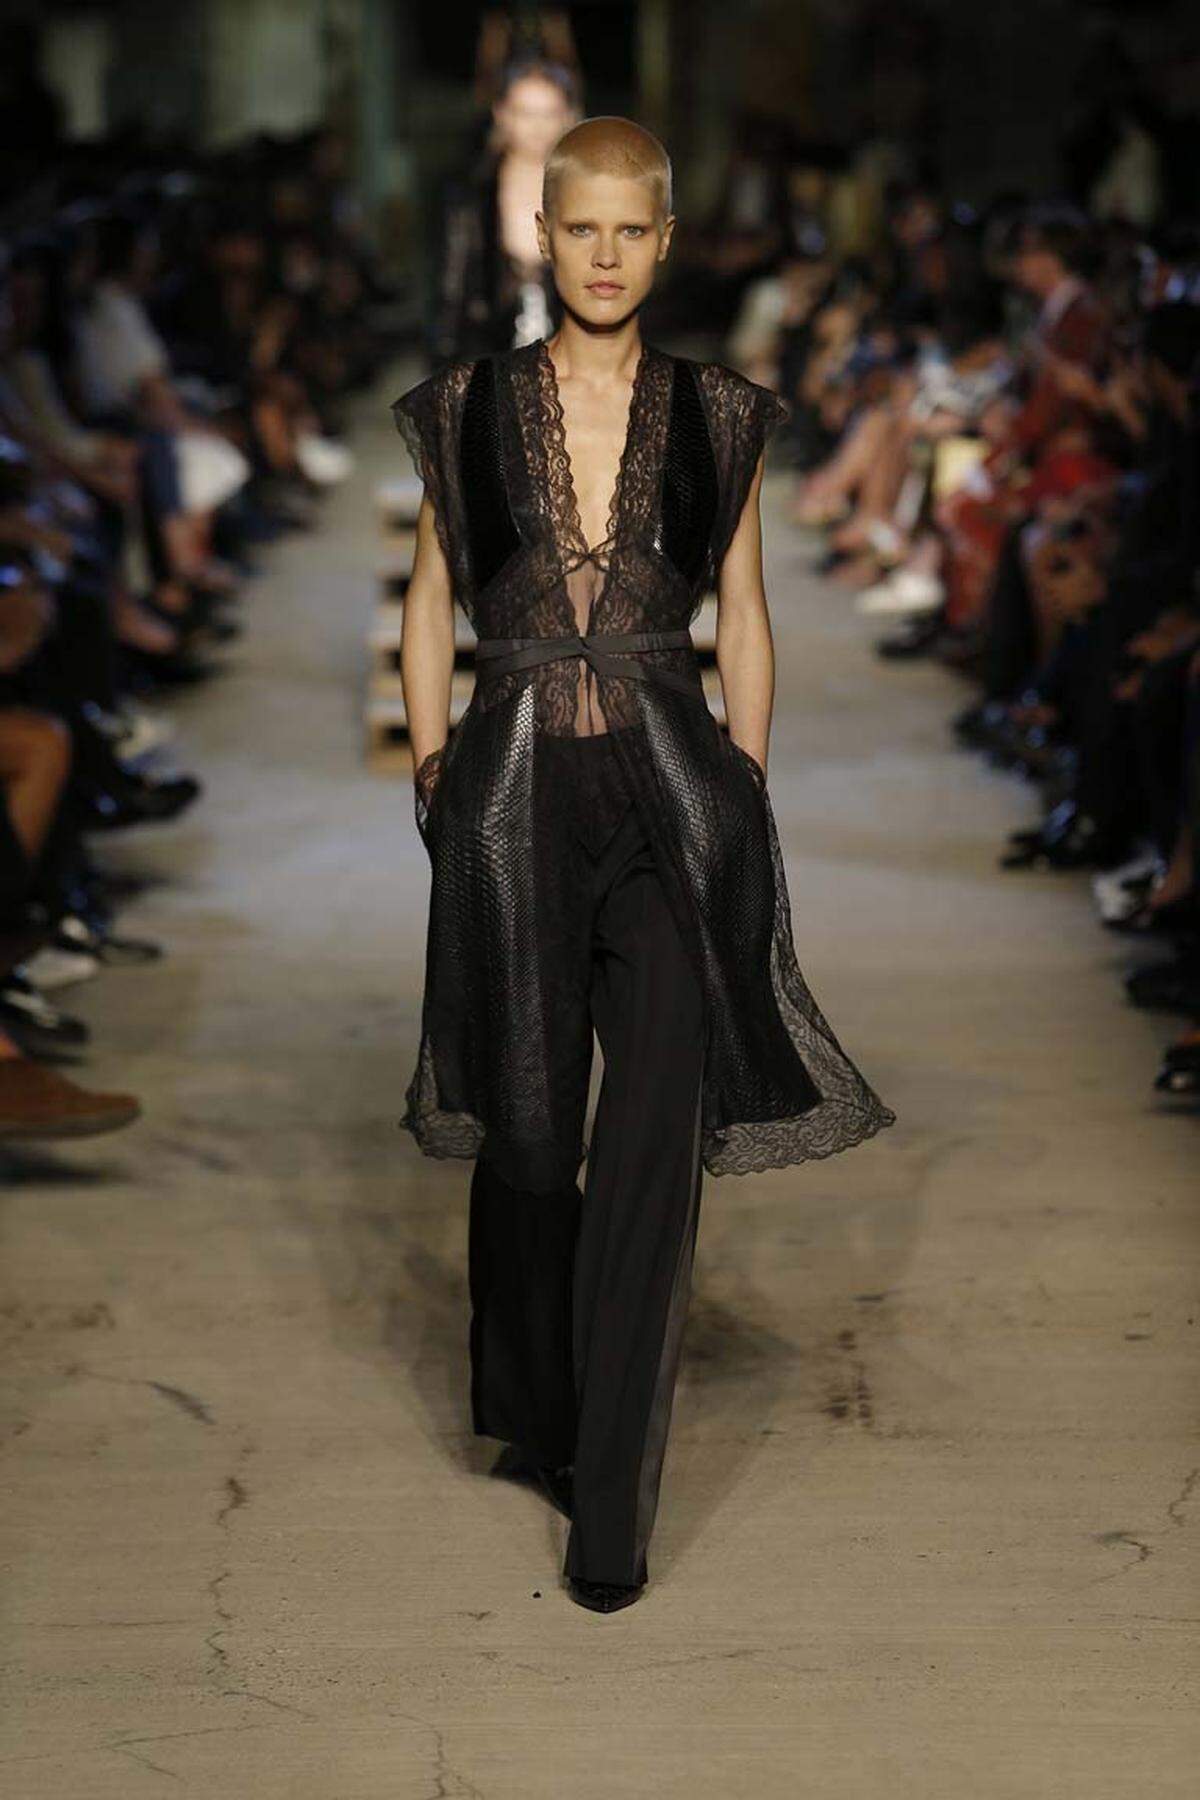 Zum Kahlschlag kam es nicht nur bei Givenchy. Models mit rasierten Köpfen waren bei den Fashion Weeks besonders gefragt.